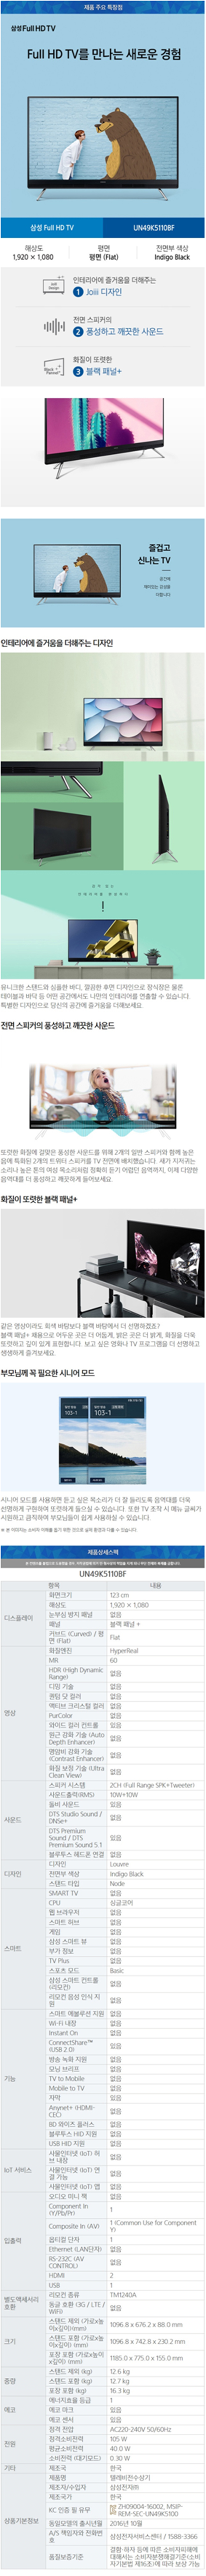 중랑케이블 - 삼성 49인치 LED TV (UN49K5110BF) 상세보기